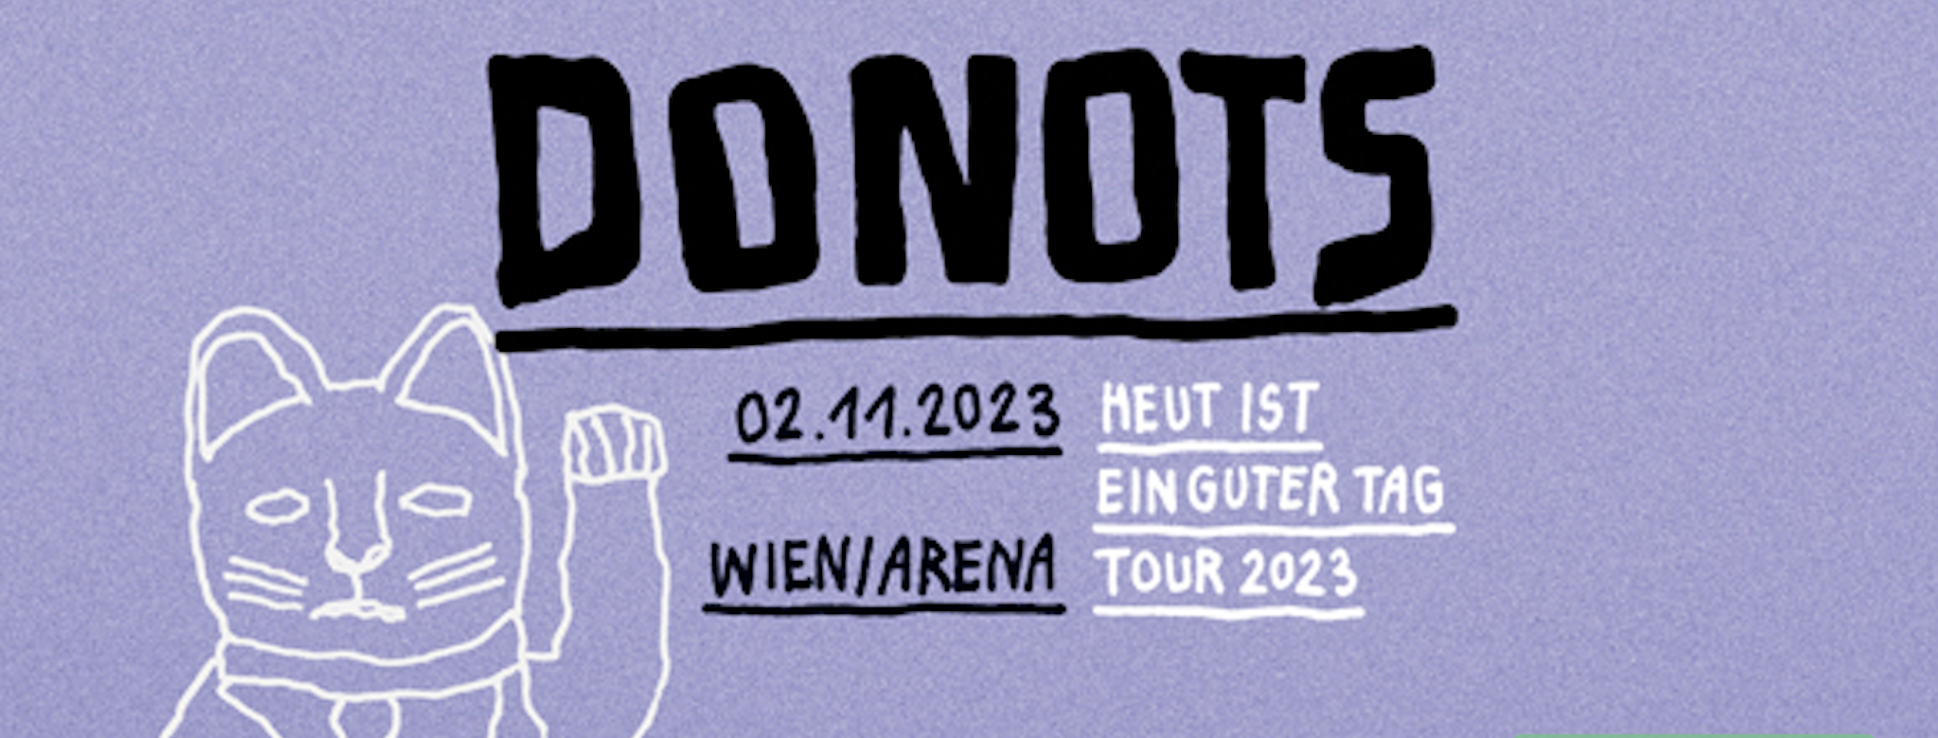 DONOTS am 2. November 2023 @ Arena Wien.